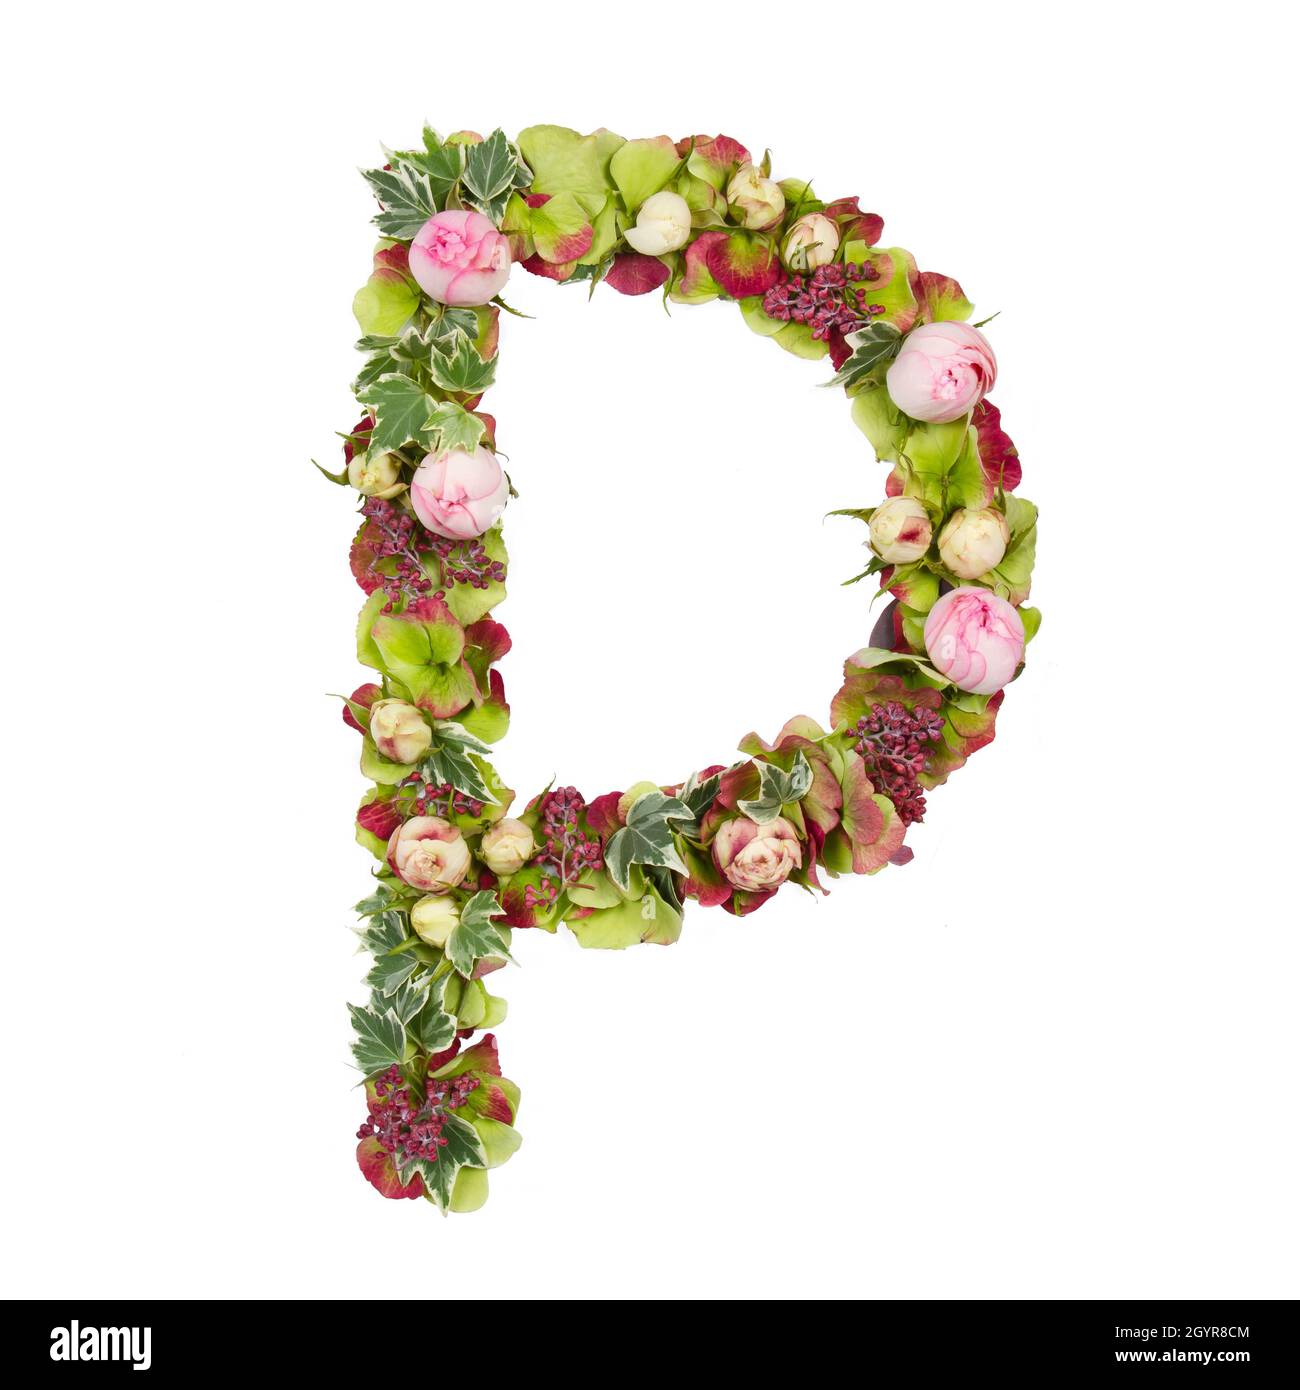 Lettre majuscule P partie d'un ensemble de lettres, de chiffres et de symboles de l'alphabet, faits de fleurs, de branches et de feuilles sur fond blanc Banque D'Images